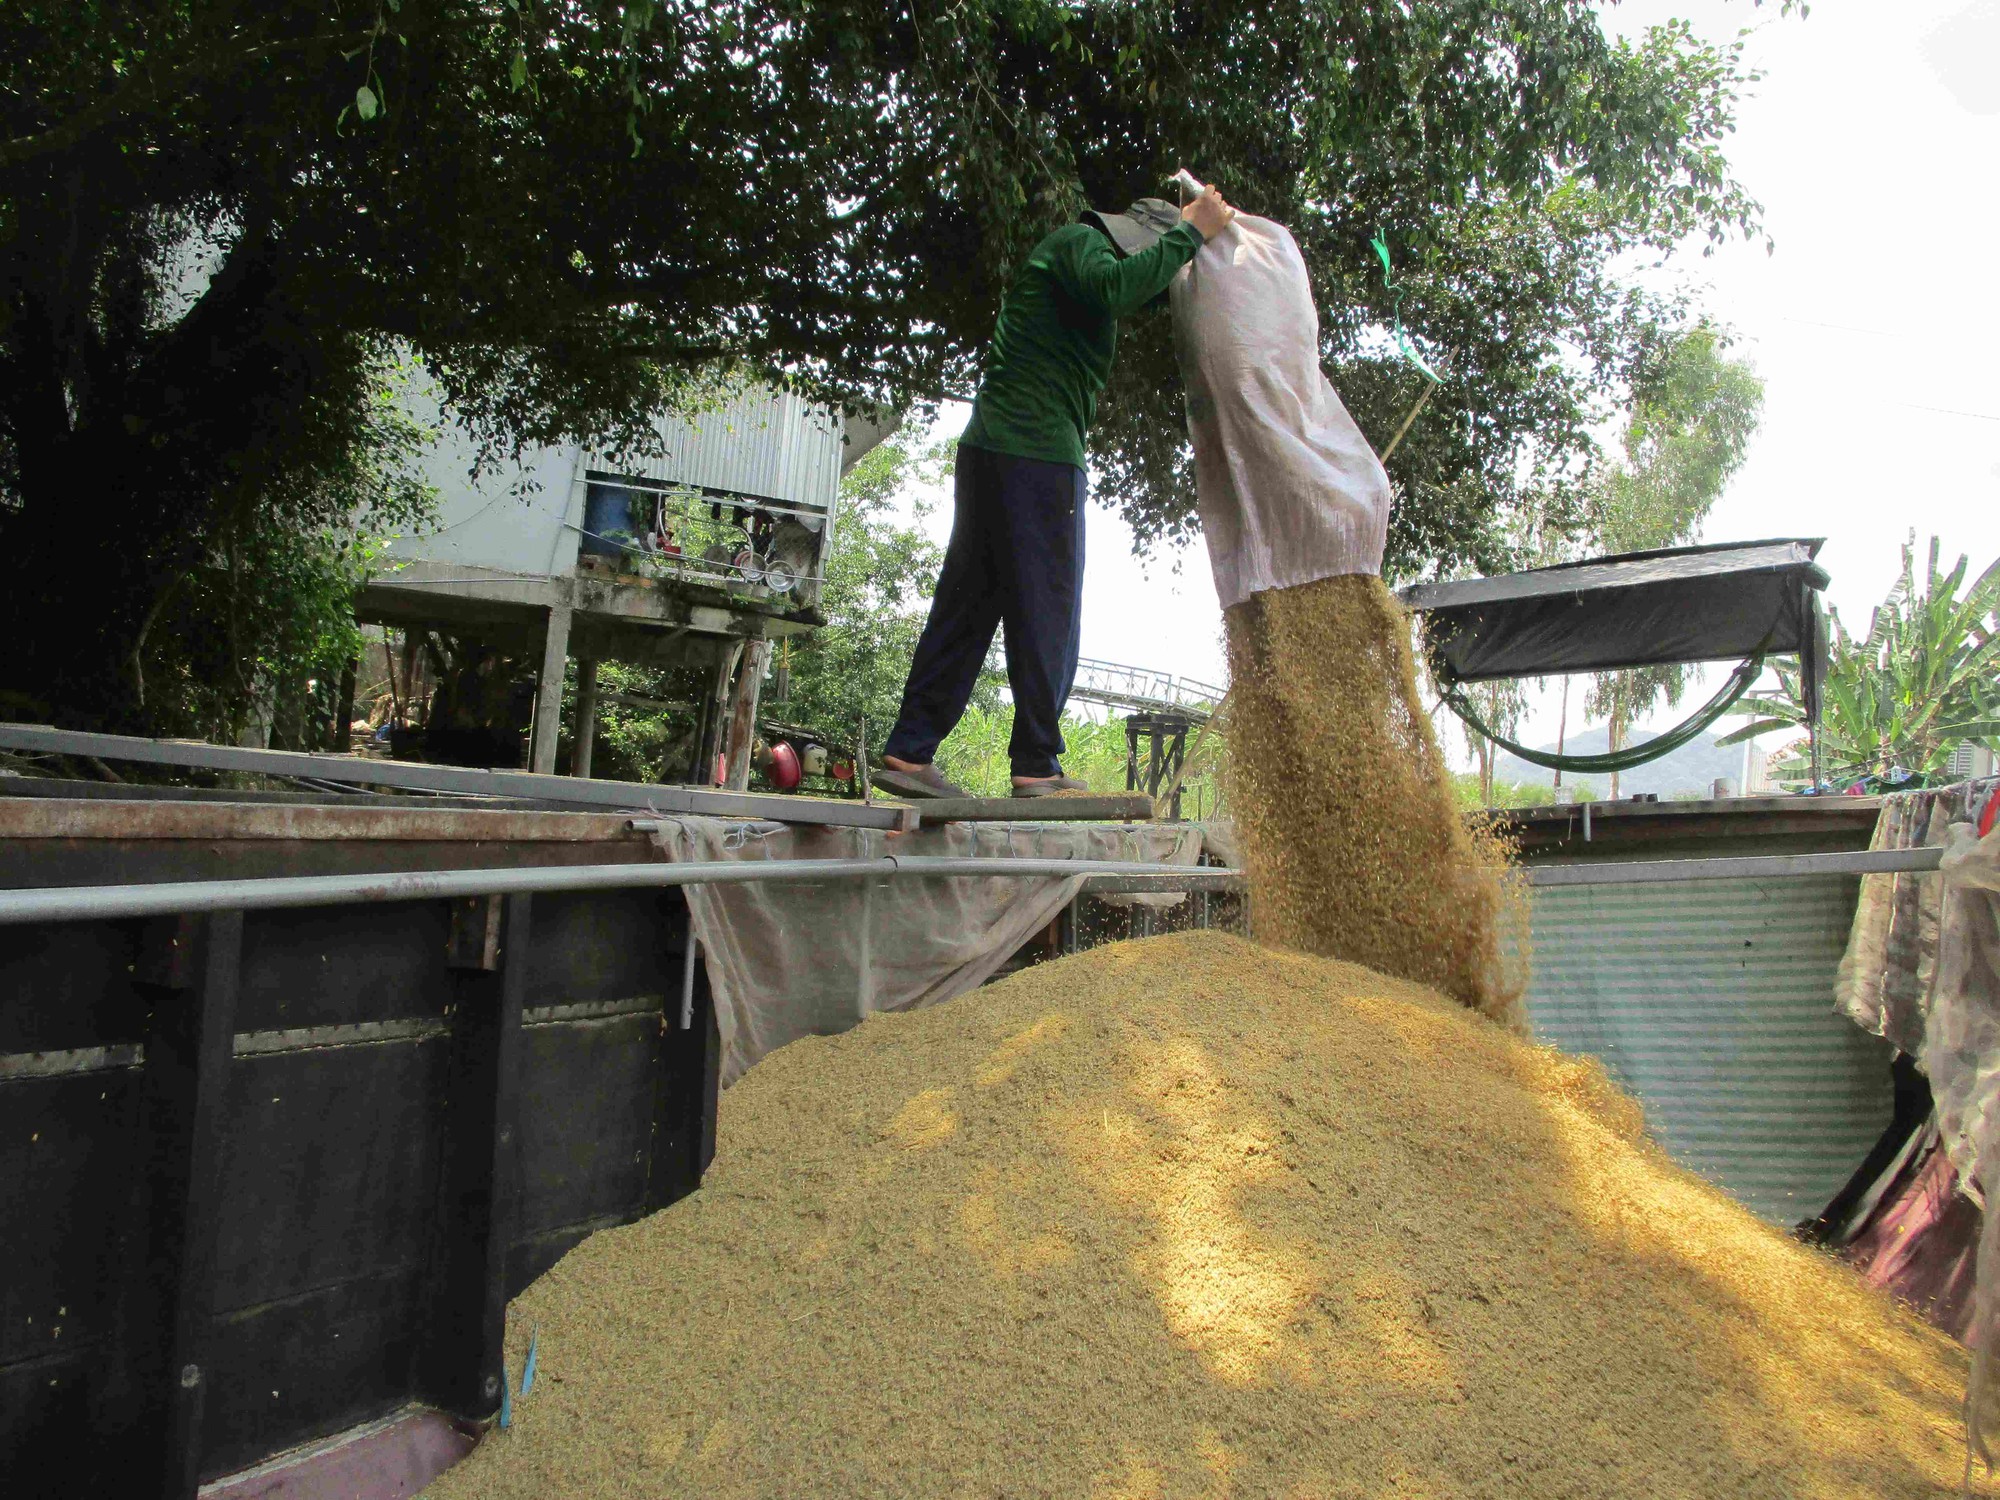 Lo giá gạo tăng ảo, doanh nghiệp không dám ký hợp đồng xuất khẩu - Ảnh 1.